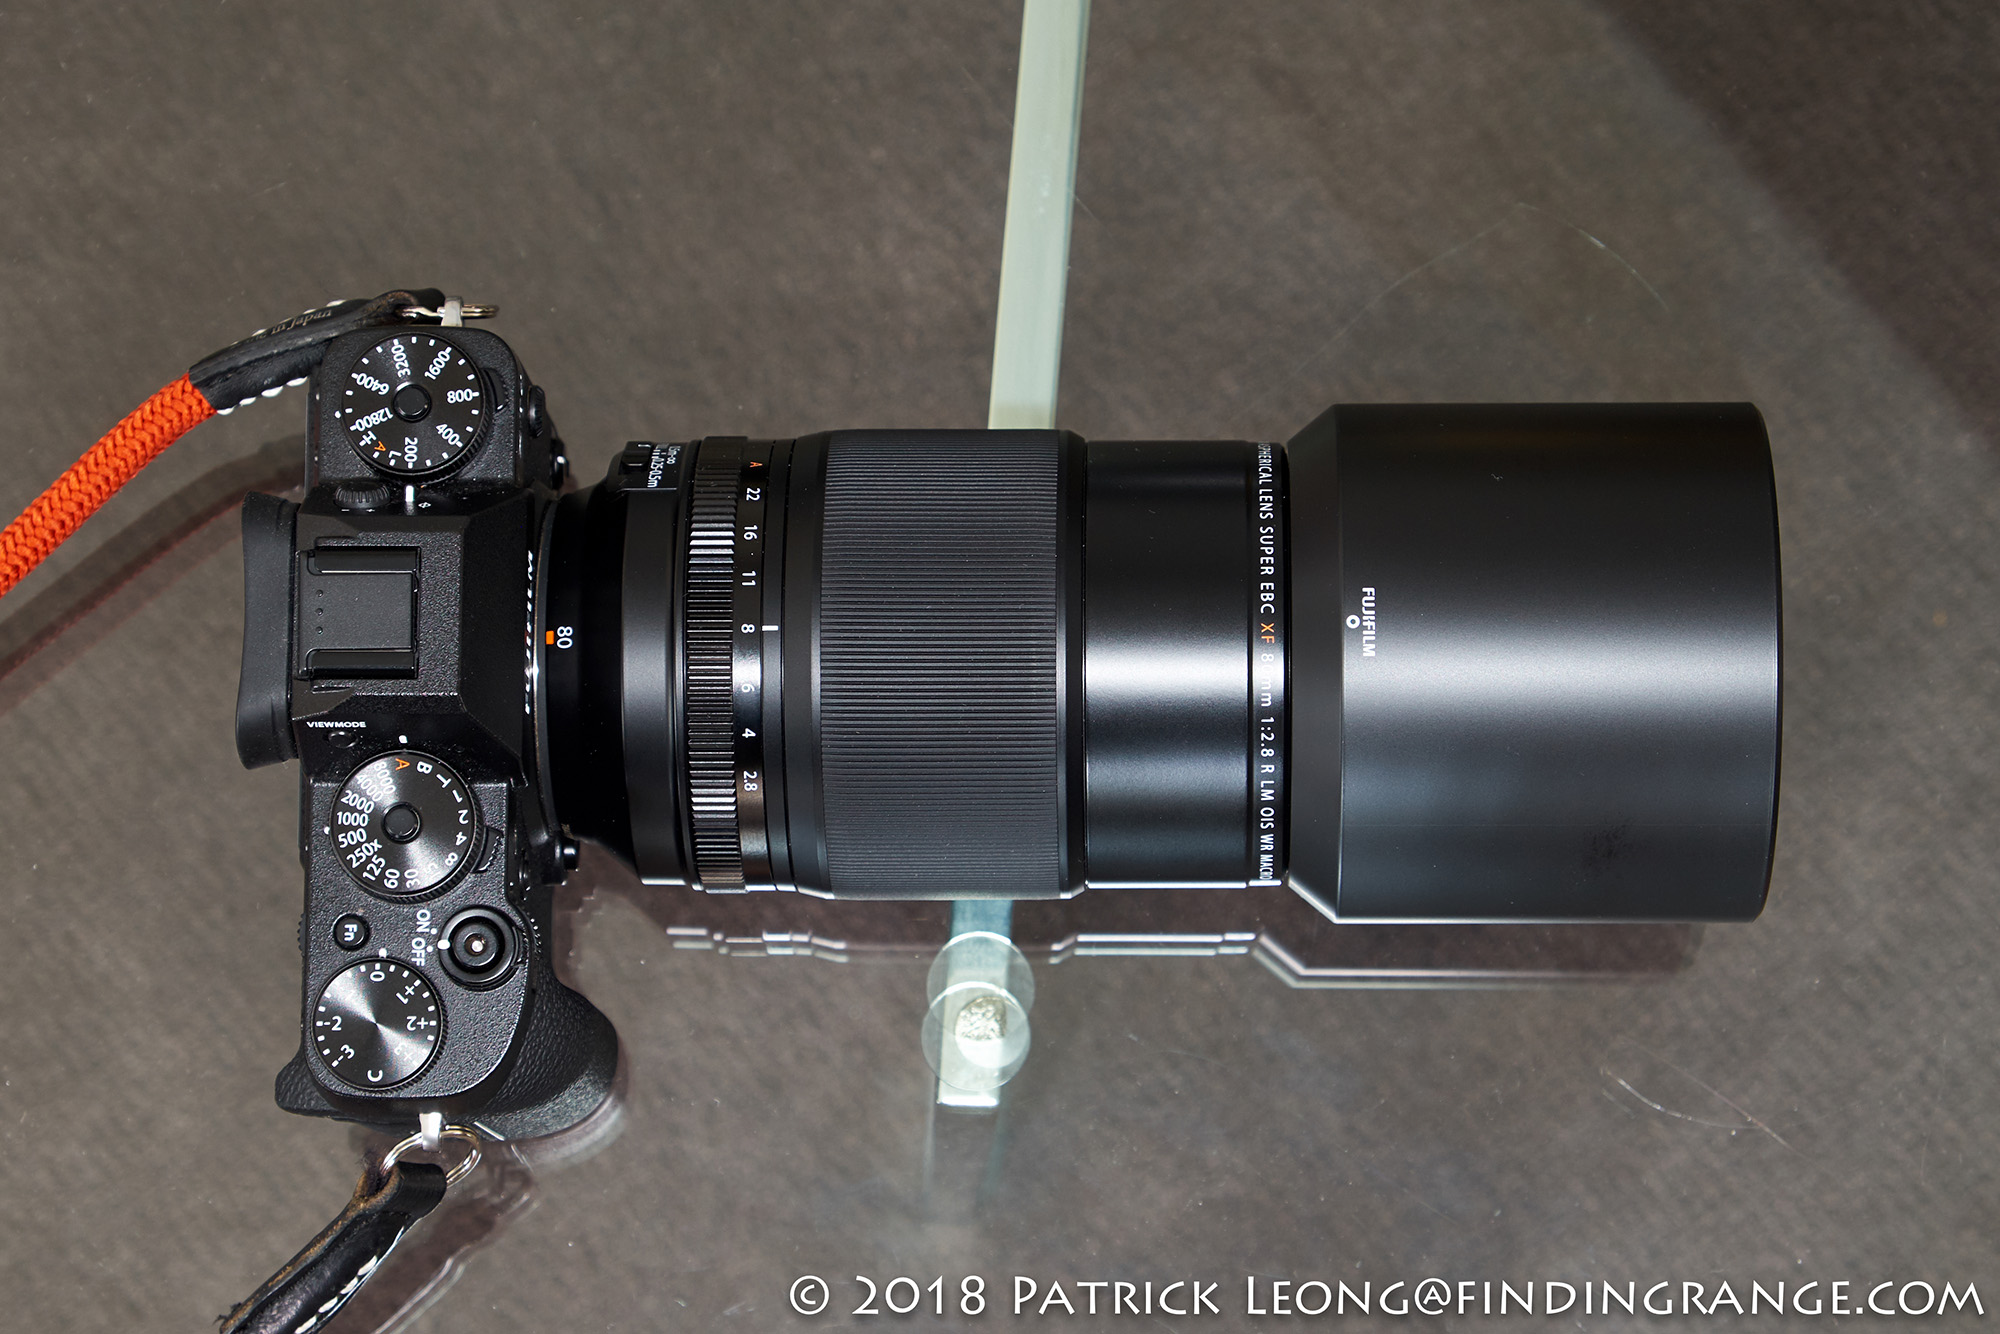 Fujifilm XF 80mm f2.8 R LM OIS WR Macro Lens Review